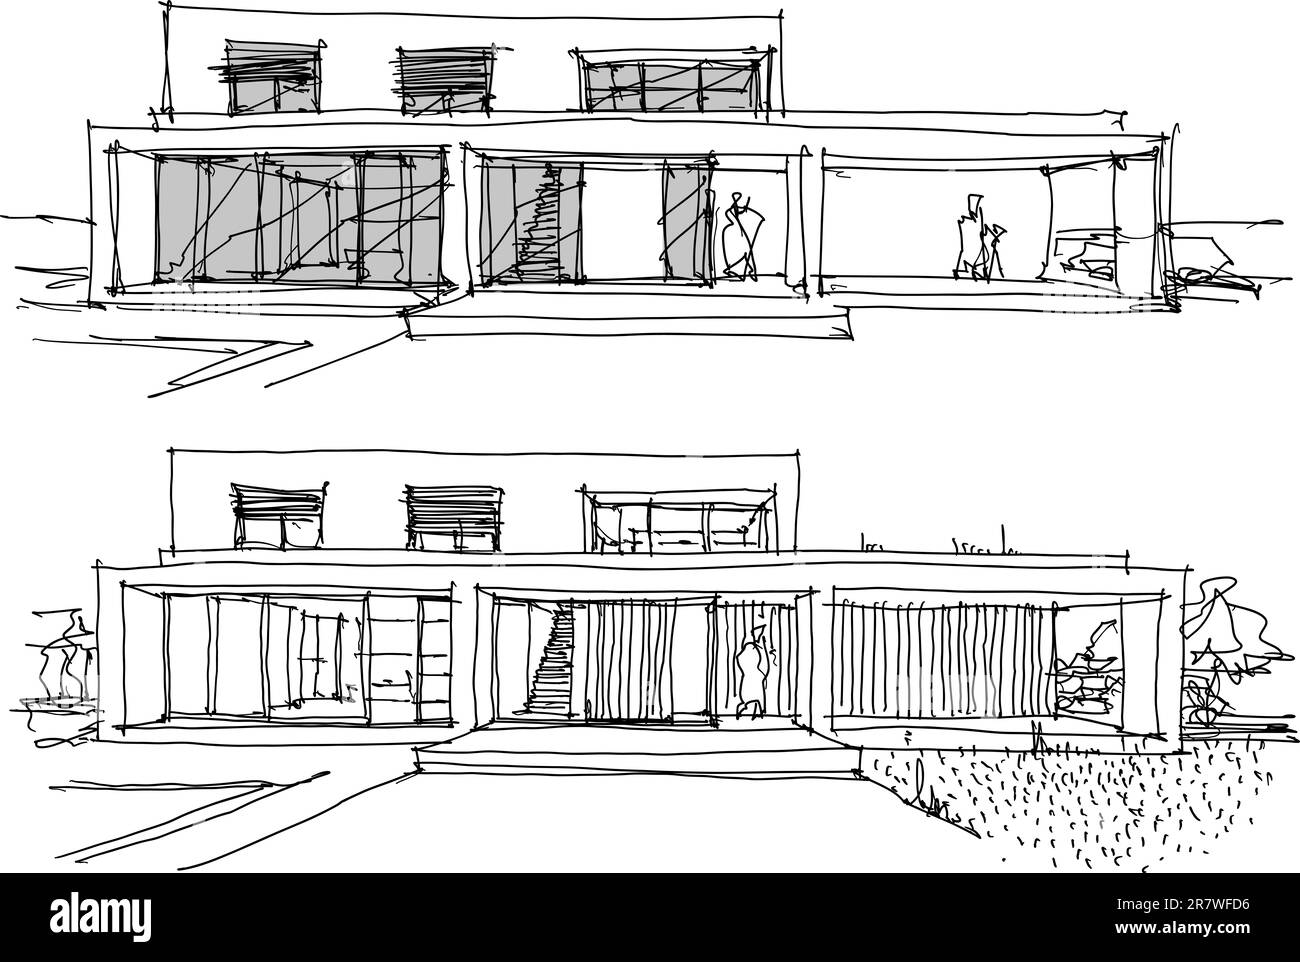 Zwei handgezeichnete architektonische Skizzen eines modernen zweistöckigen Einzelhauses mit Flachdach und Menschen um sich herum Stockfoto